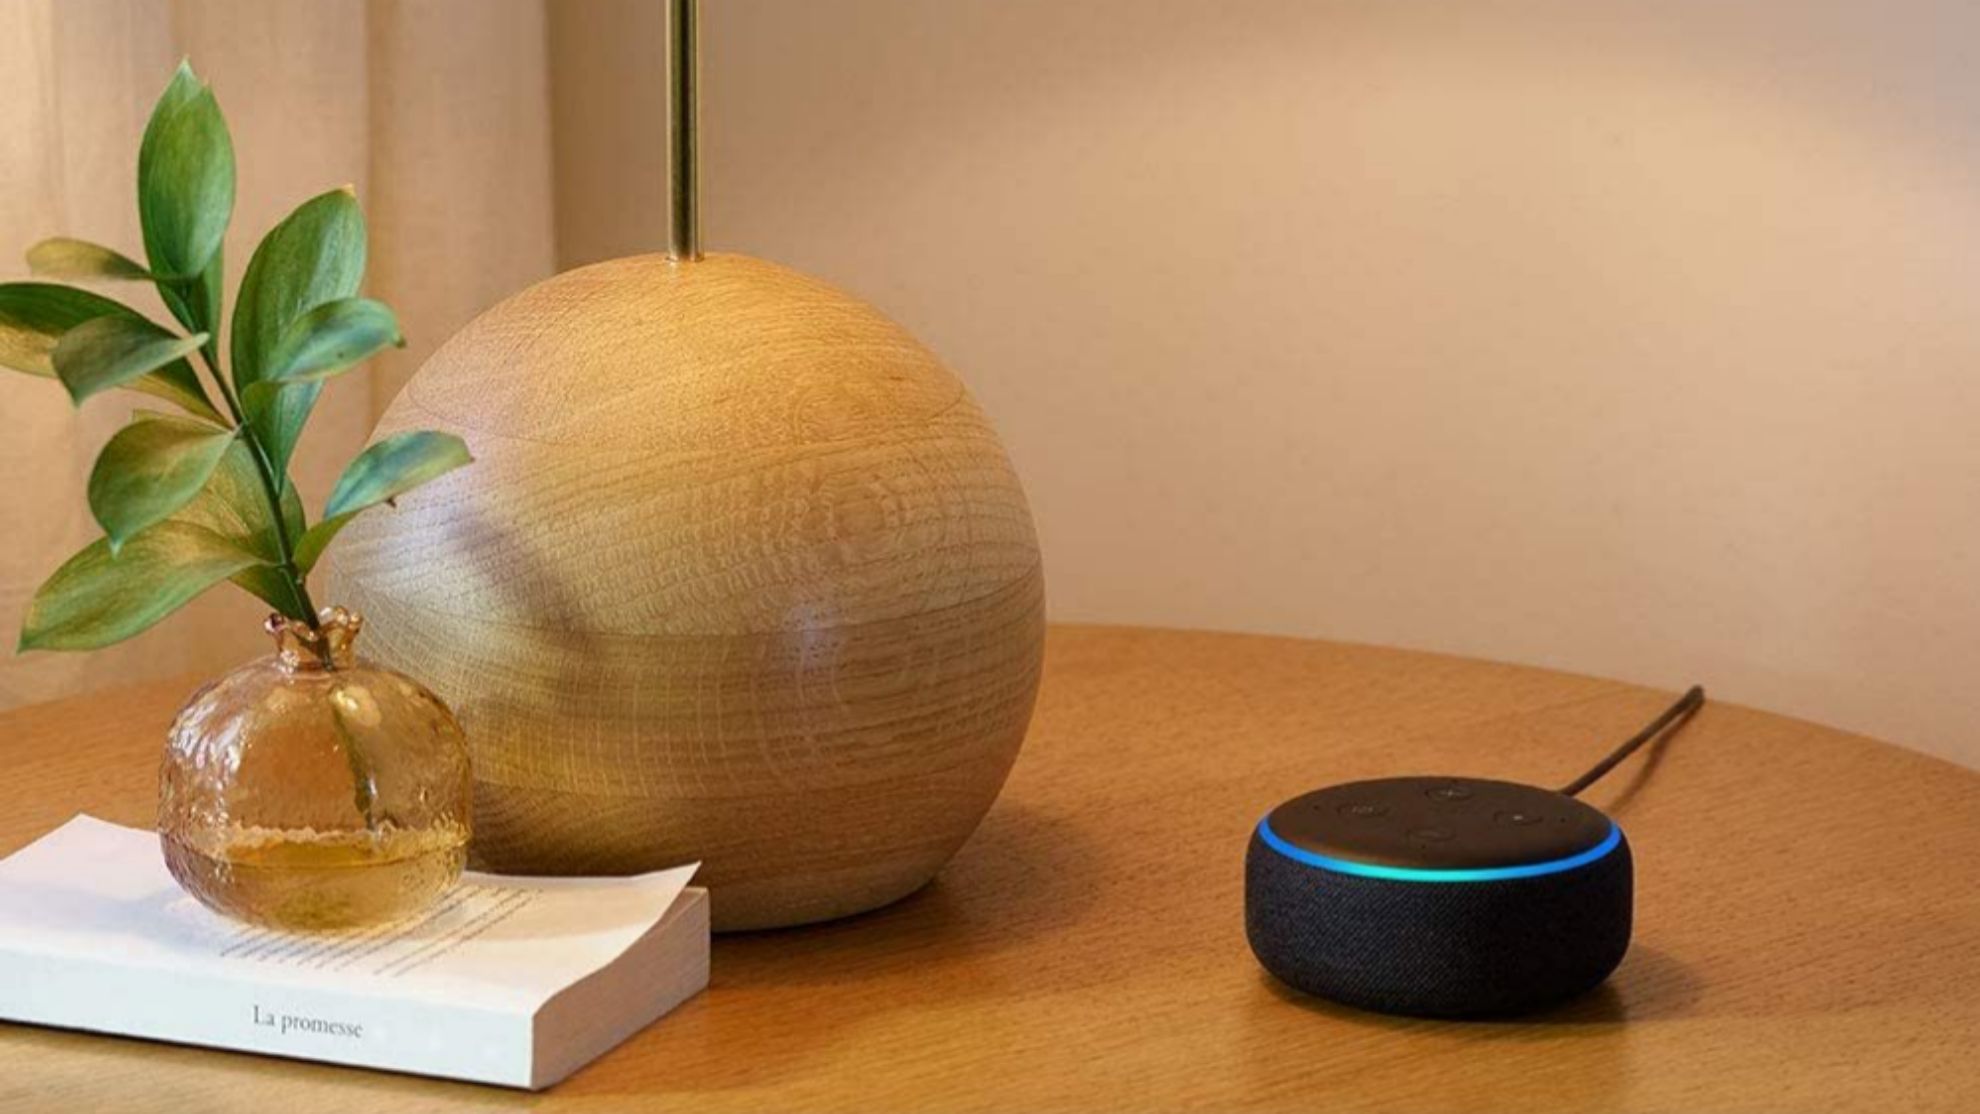 Oferta del día en : Echo Dot con Alexa al 42% de descuento